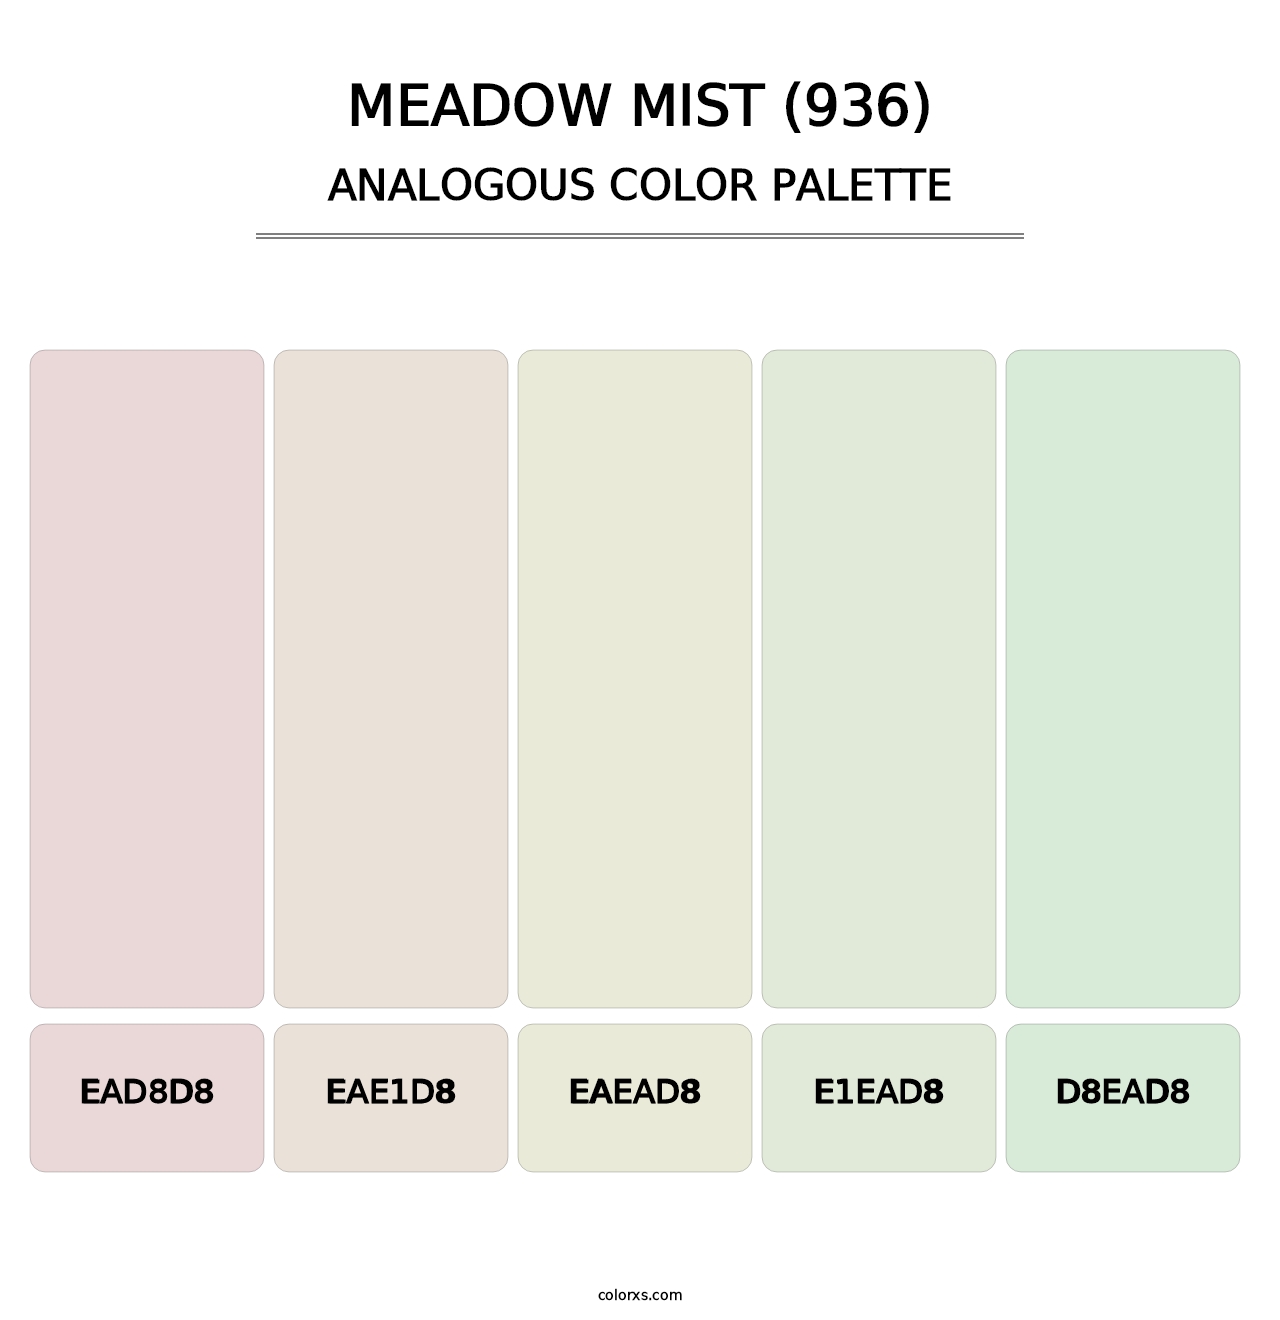 Meadow Mist (936) - Analogous Color Palette